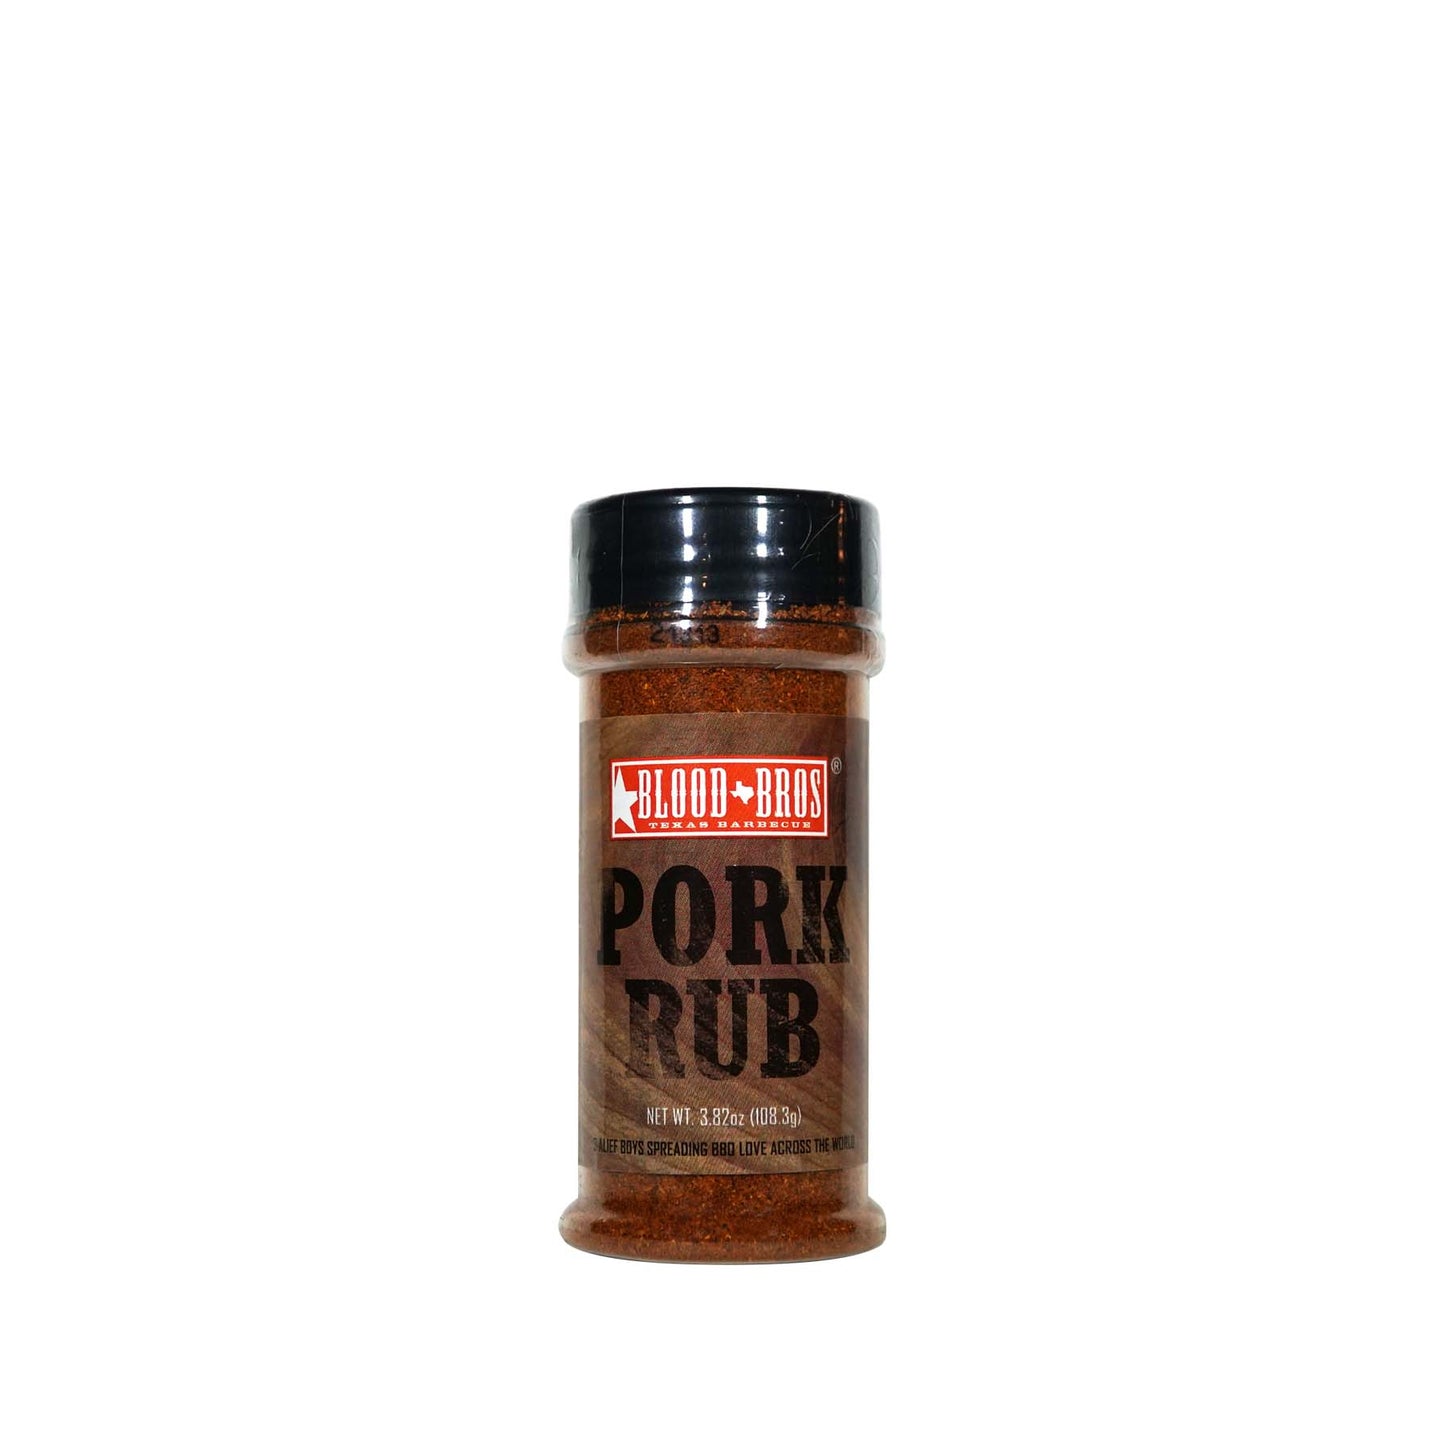 Pork Rub (Net Wt. 3.82oz)